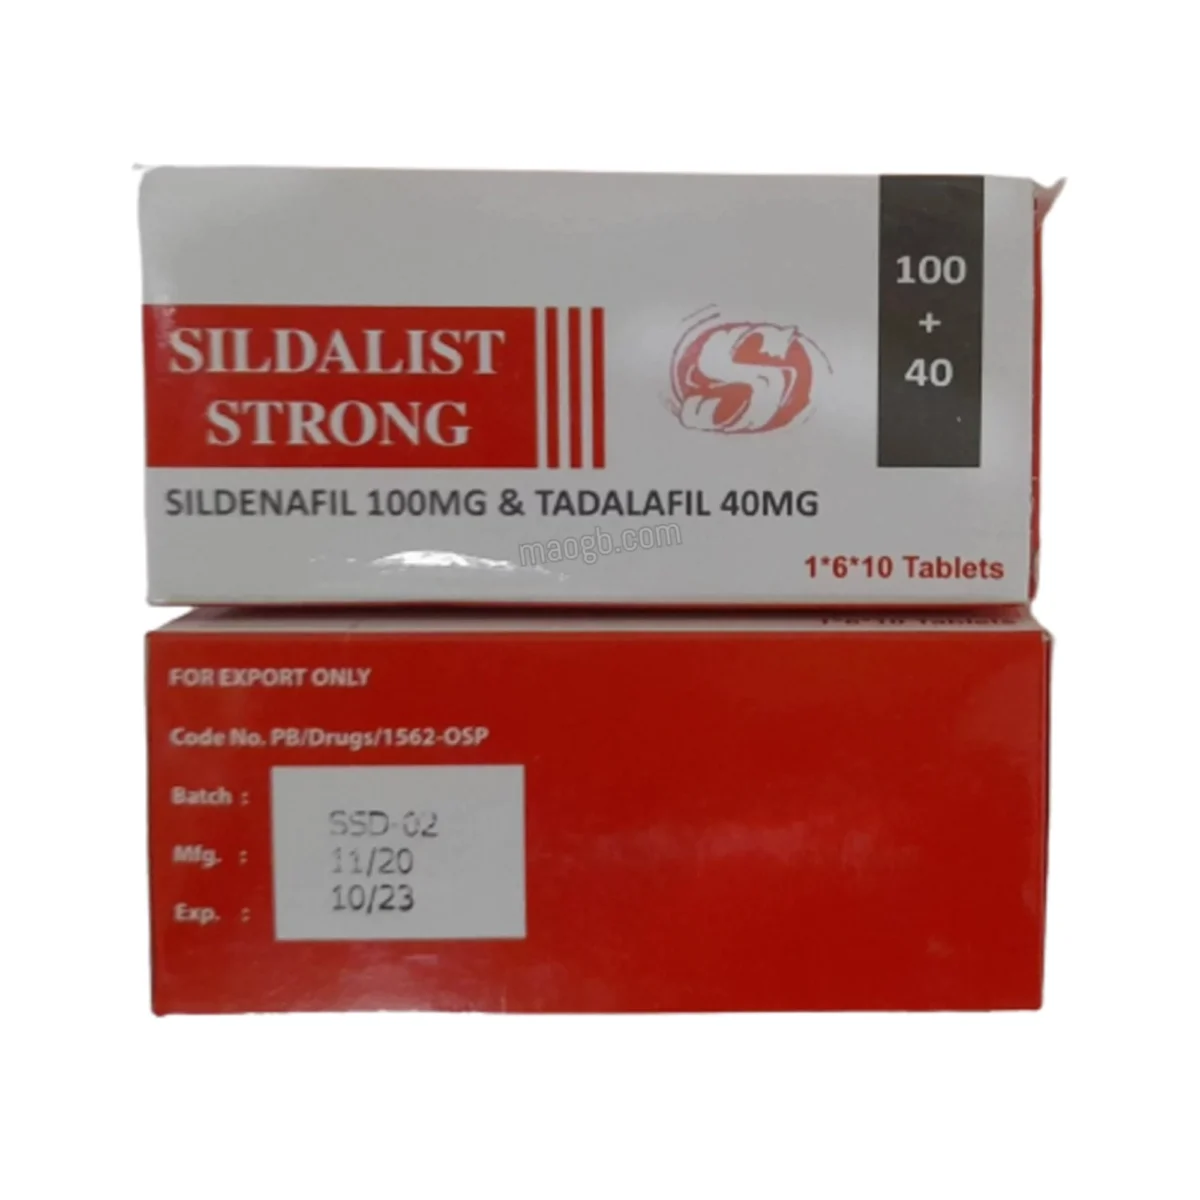 Sildalist Strong 140mg Sildenafil & Tadalafil Tablets 4